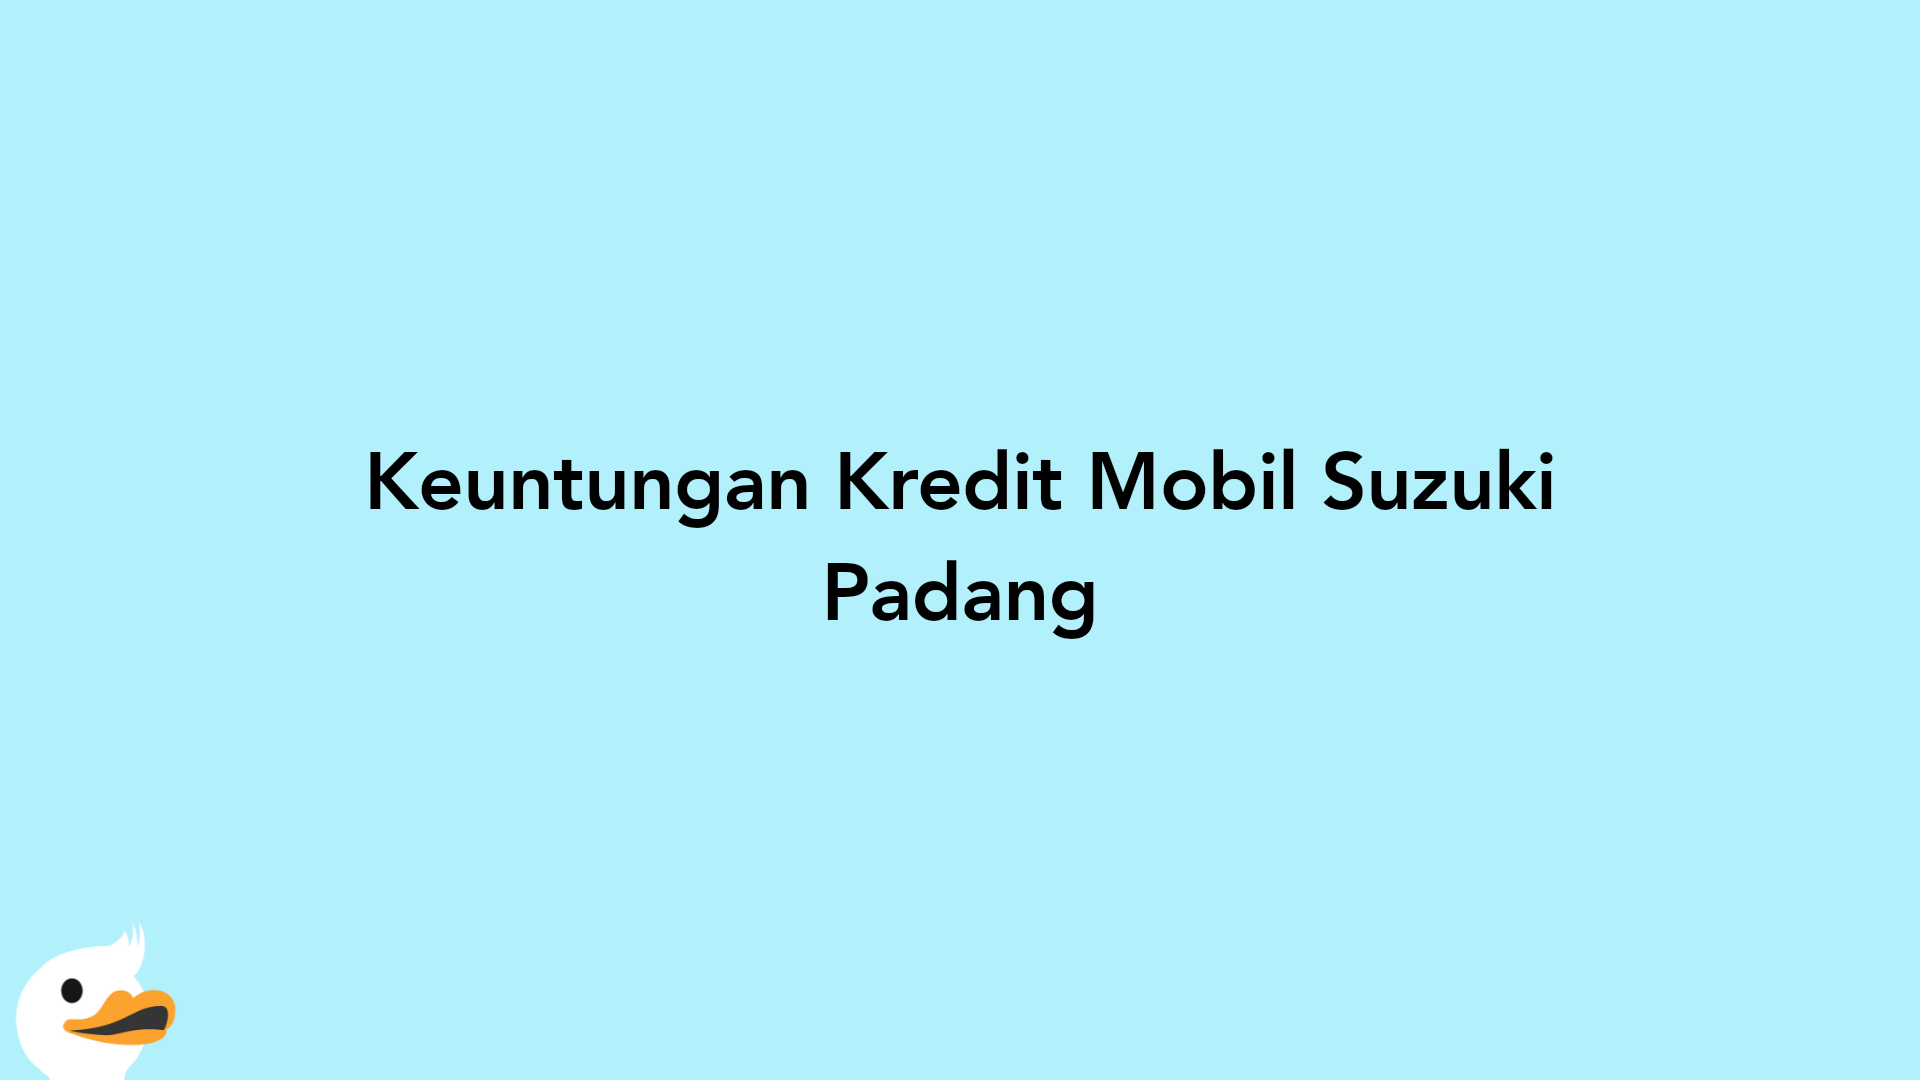 Keuntungan Kredit Mobil Suzuki Padang